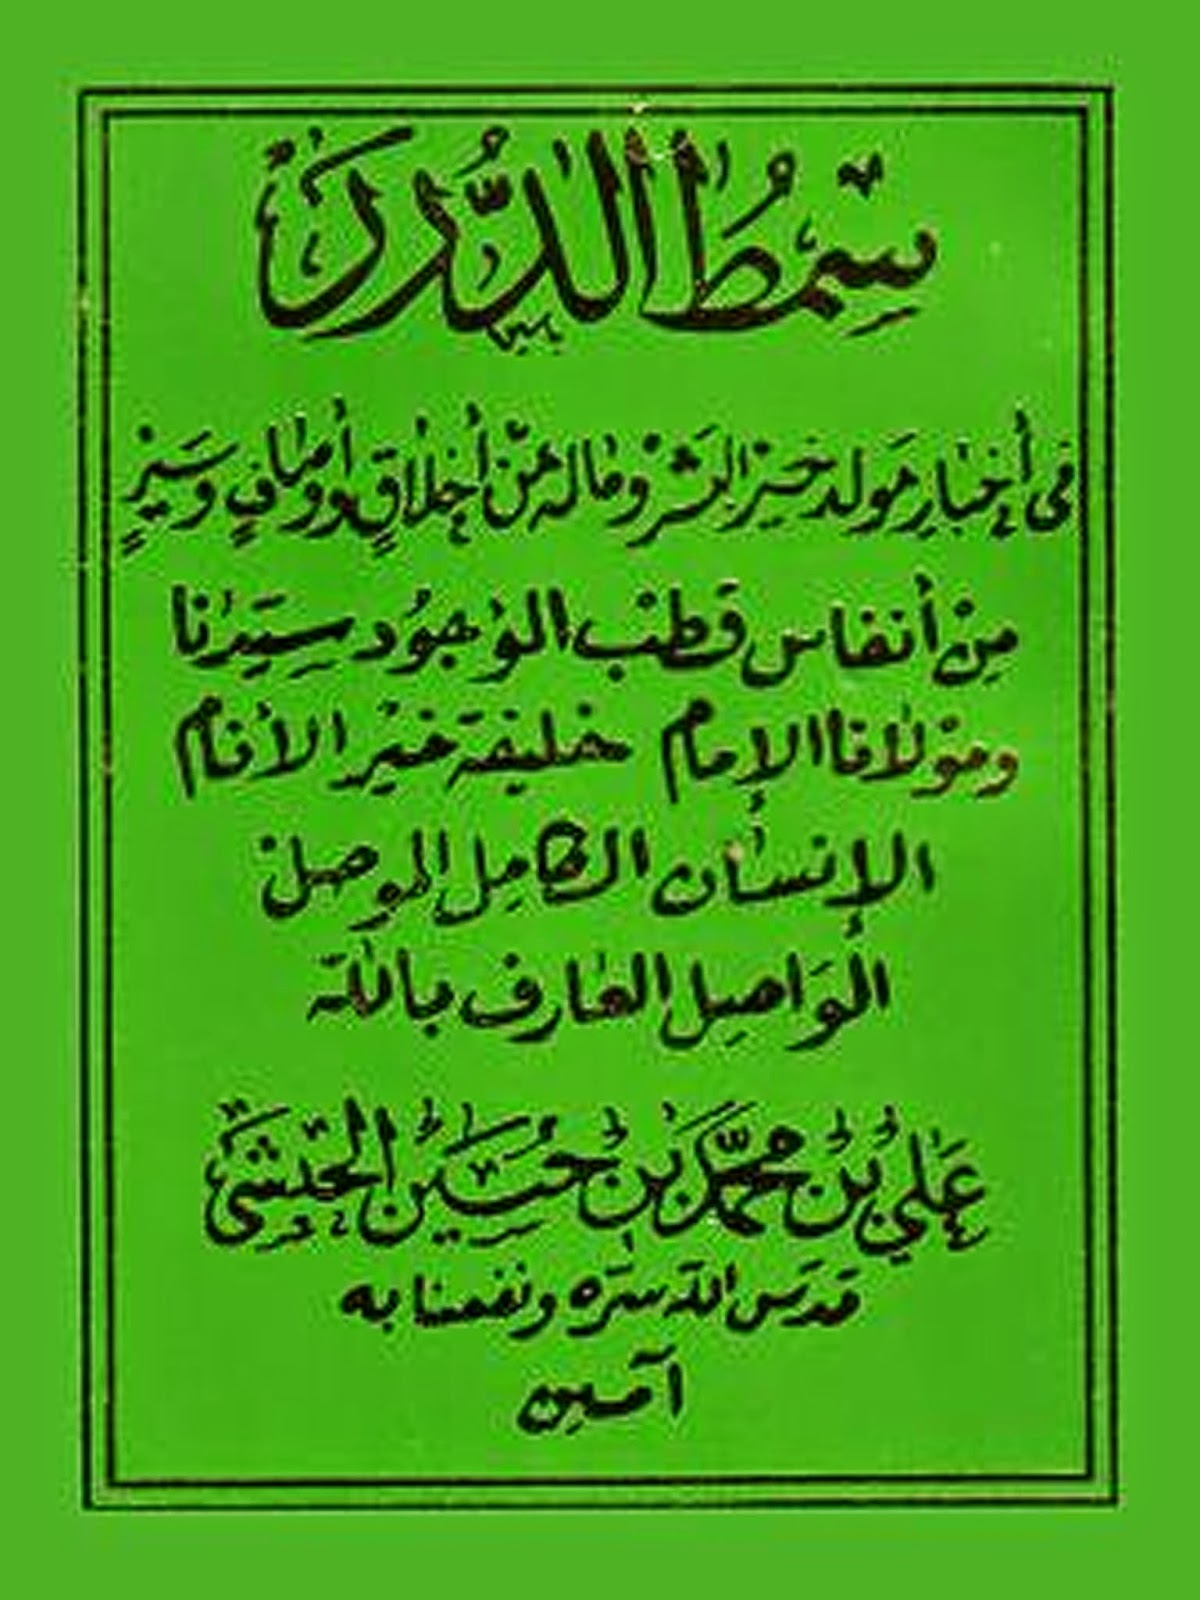 Teks Bacaan Kitab Maulid Simtudduror Habib Ali bin Muhammad Al Habsyi